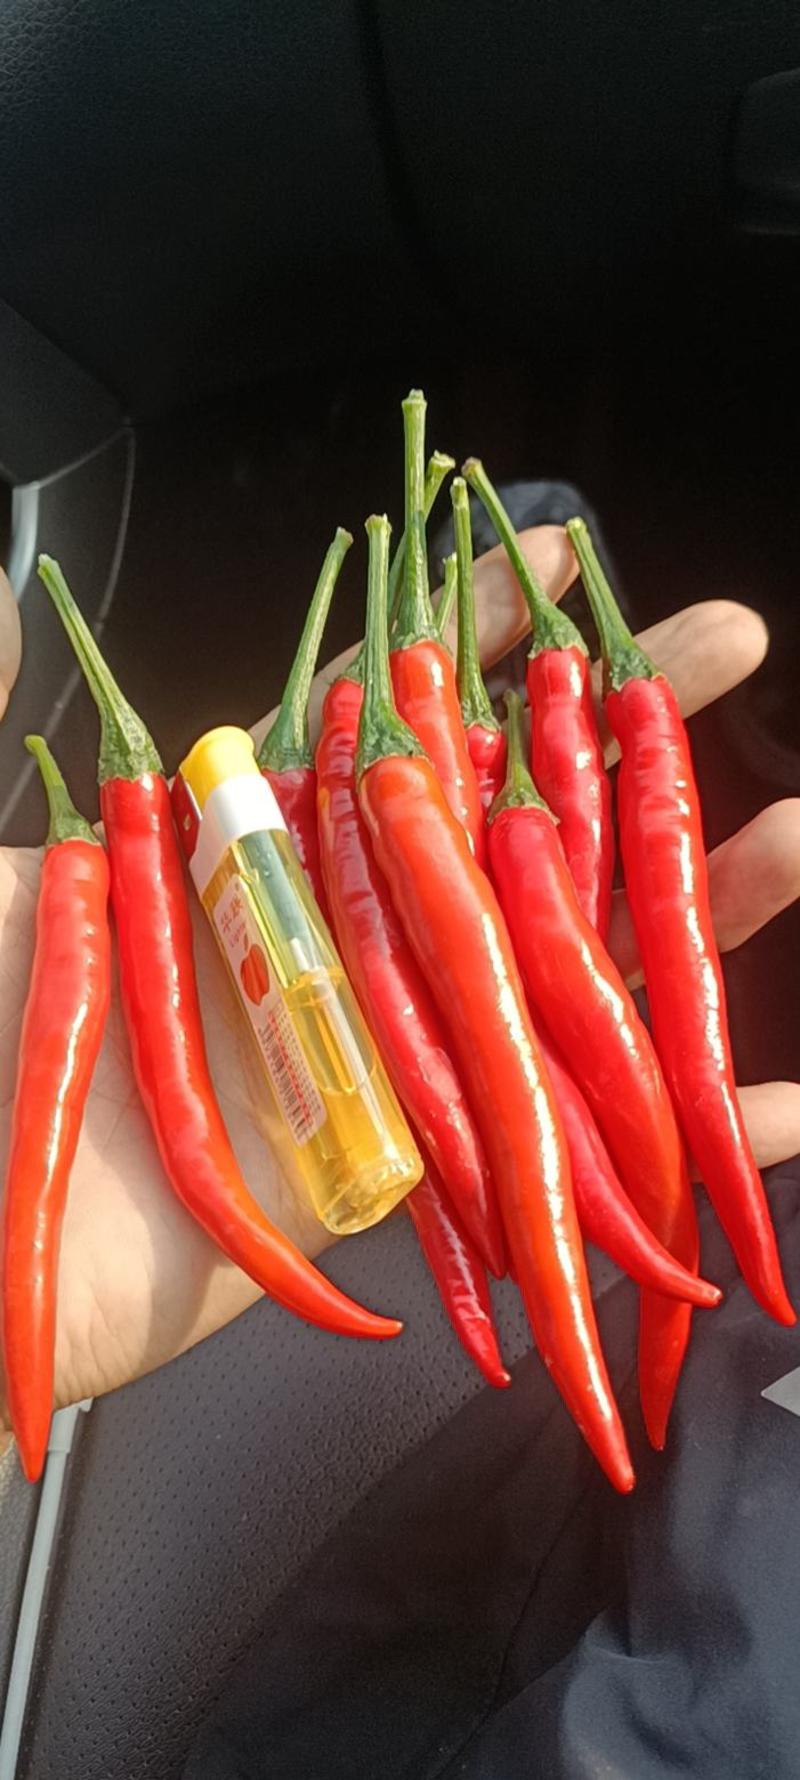 广西小米椒朝天椒质量保证货源充足支持代发欢迎咨询